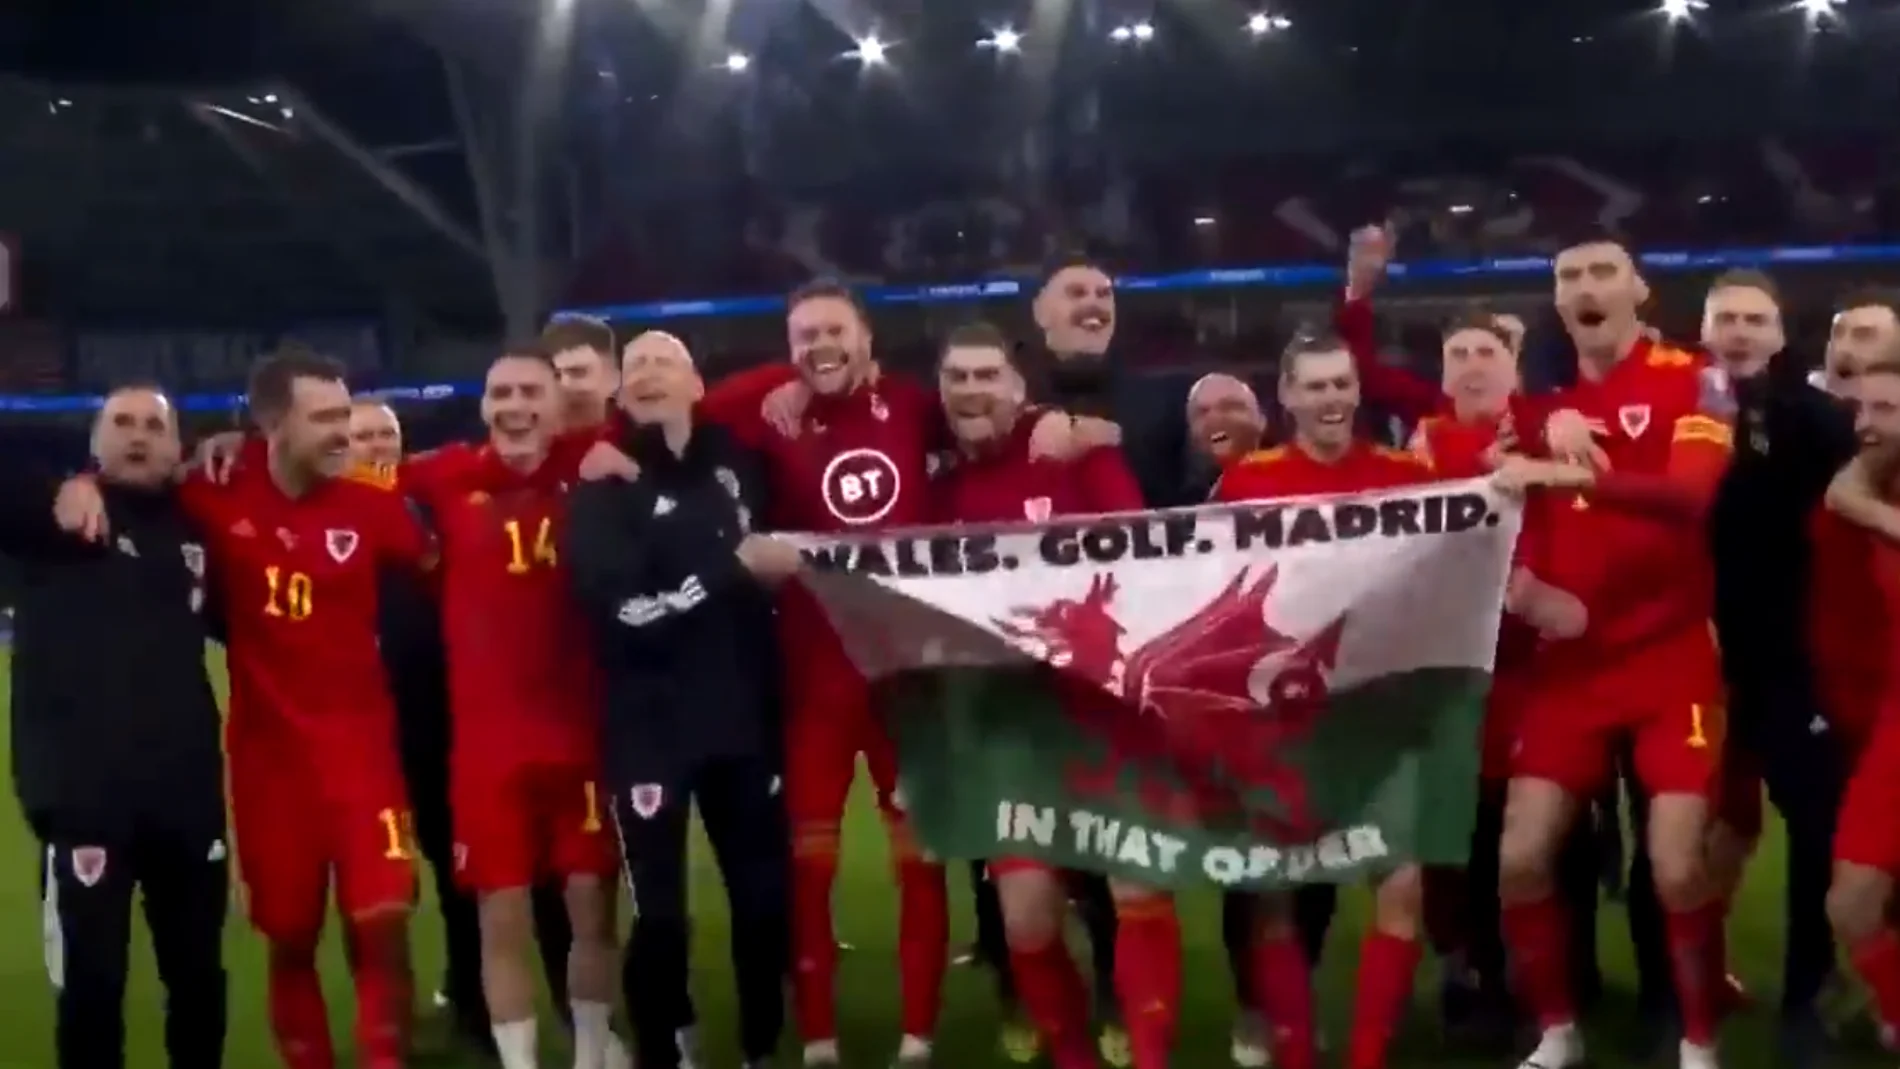 Gareth Bale y la polémica bandera con el mensaje "Gales. Golf. Madrid. En ese orden"